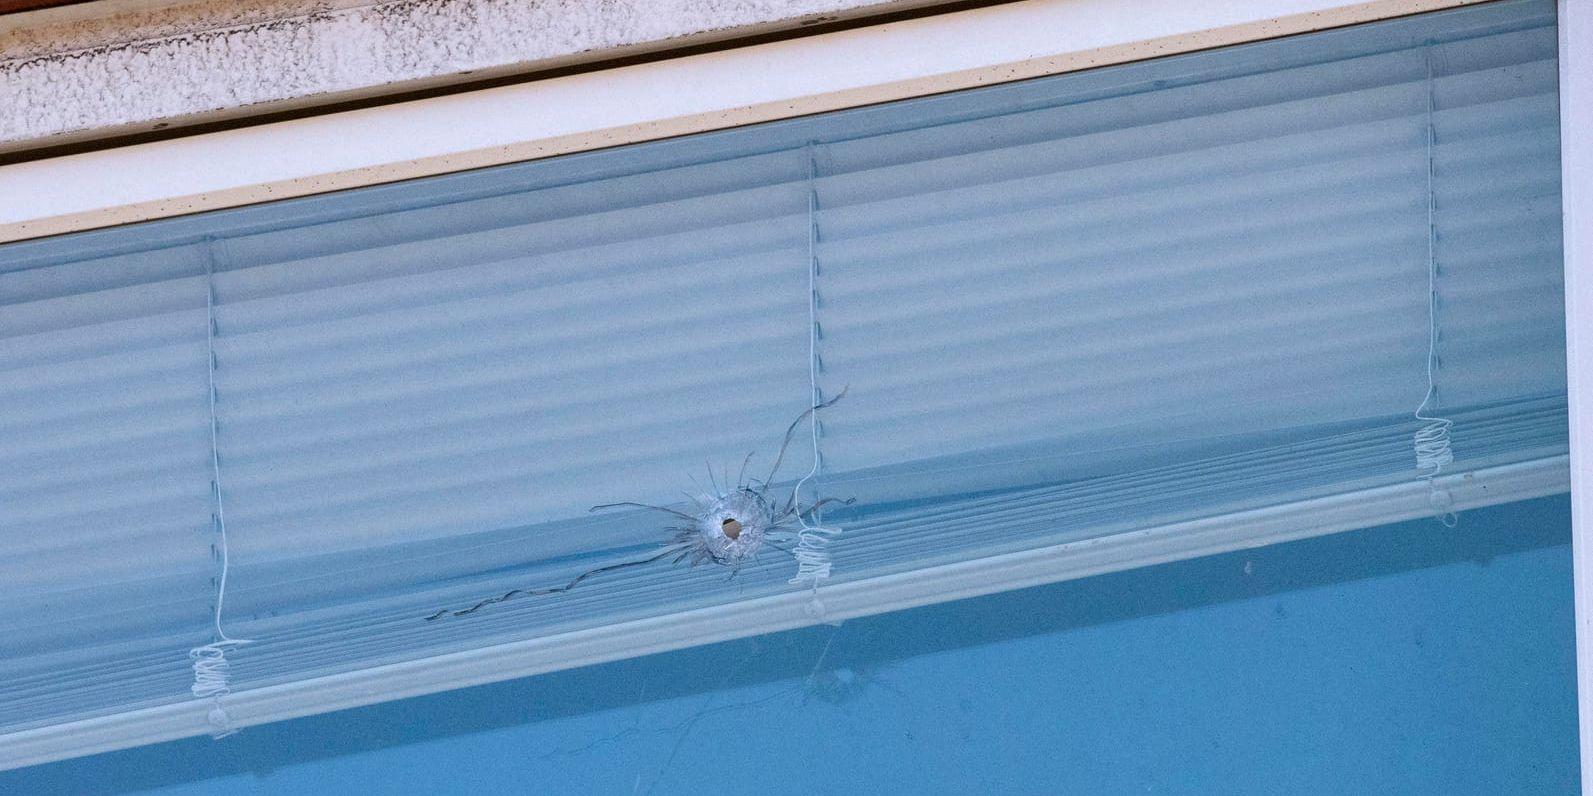 Ett skotthål i en fönsterruta till en lägenhet i Malmö undersöks av polisen.